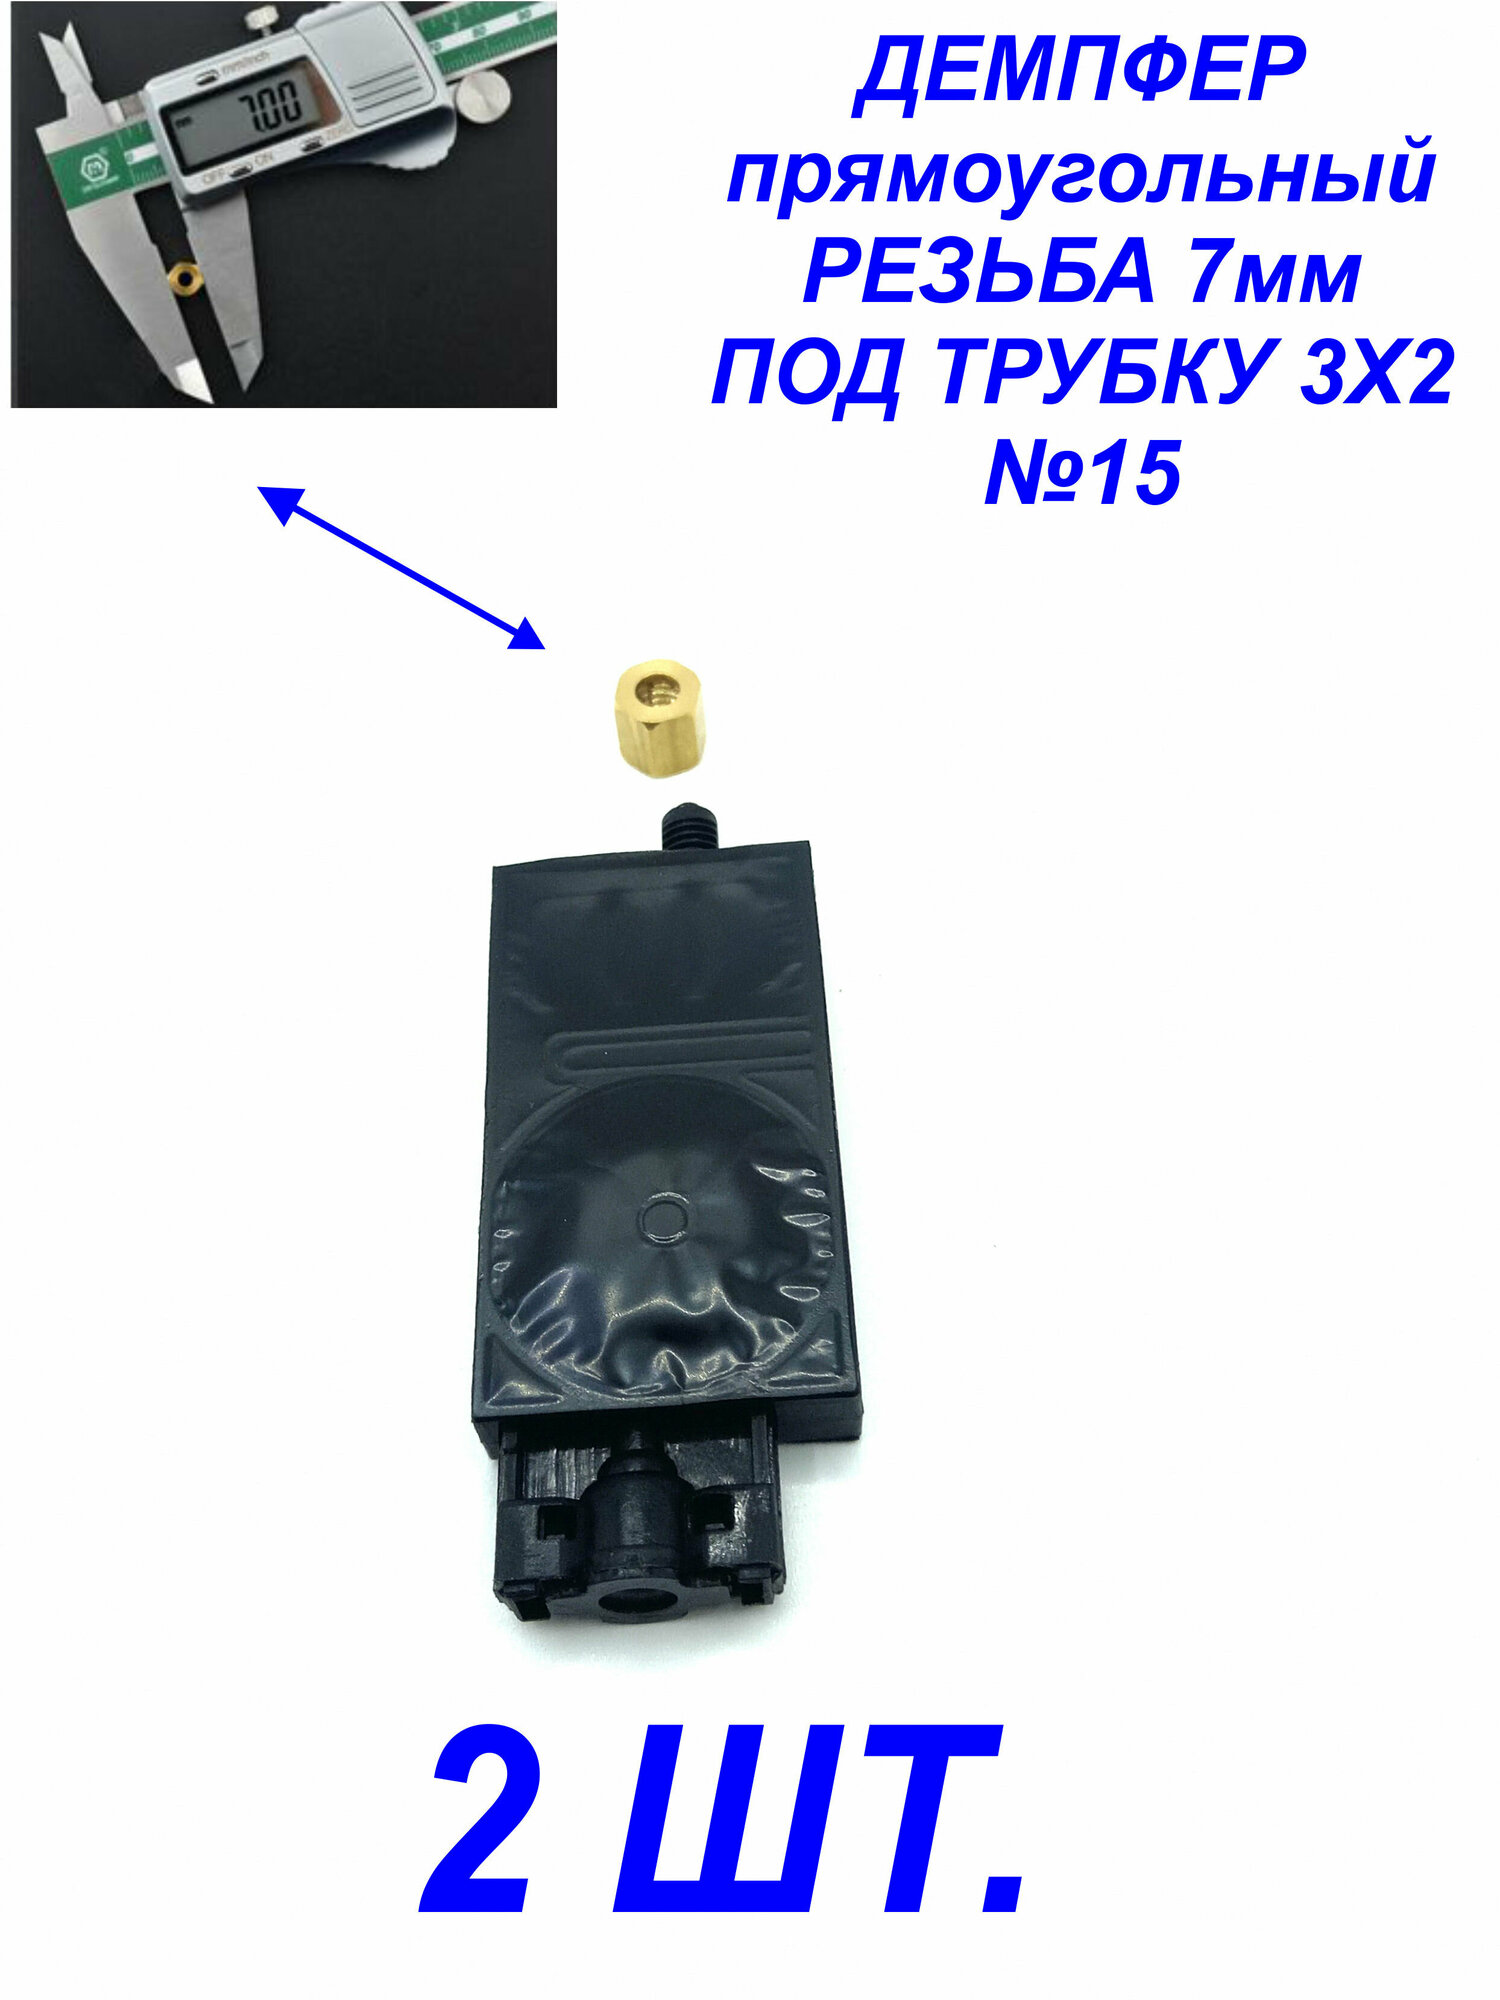 Демпфер№15 2шт. для принтеров DX5 TX800 XP600 Mimaki TS3 JV33 CJV30 TS5 JV2 Galaxy для УФ чернил под трубки 3 мм диаметром, прямоугольный.